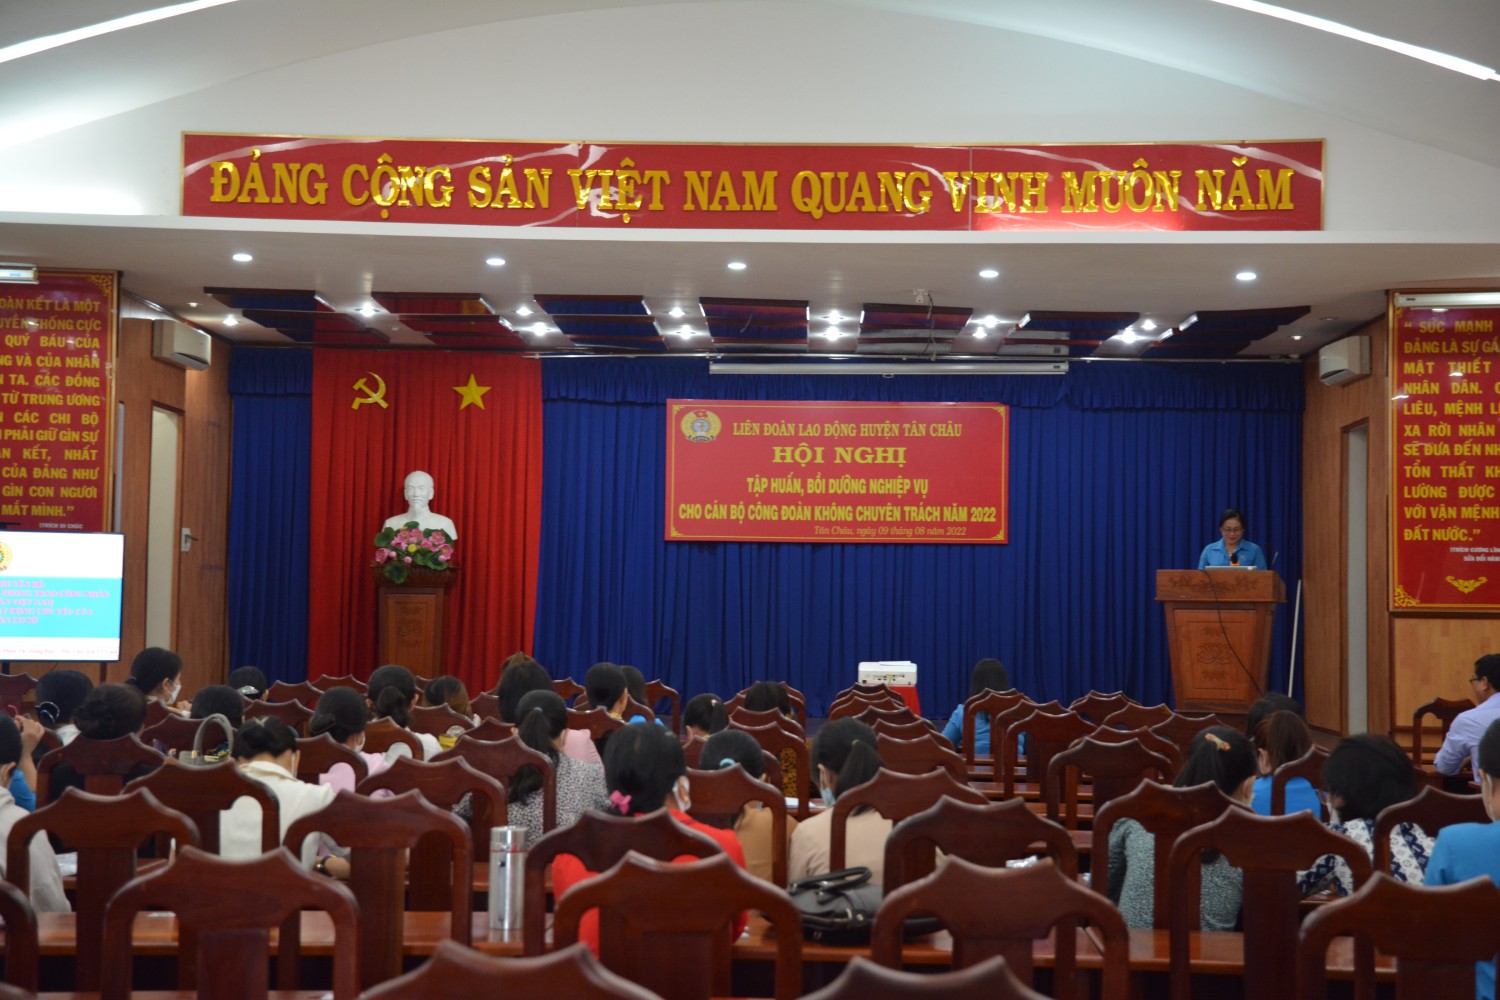 Liên đoàn lao động huyện Tân Châu tập huấn bồi dưỡng nghiệp vụ cho  cán bộ công đoàn không chuyên trách năm 2022